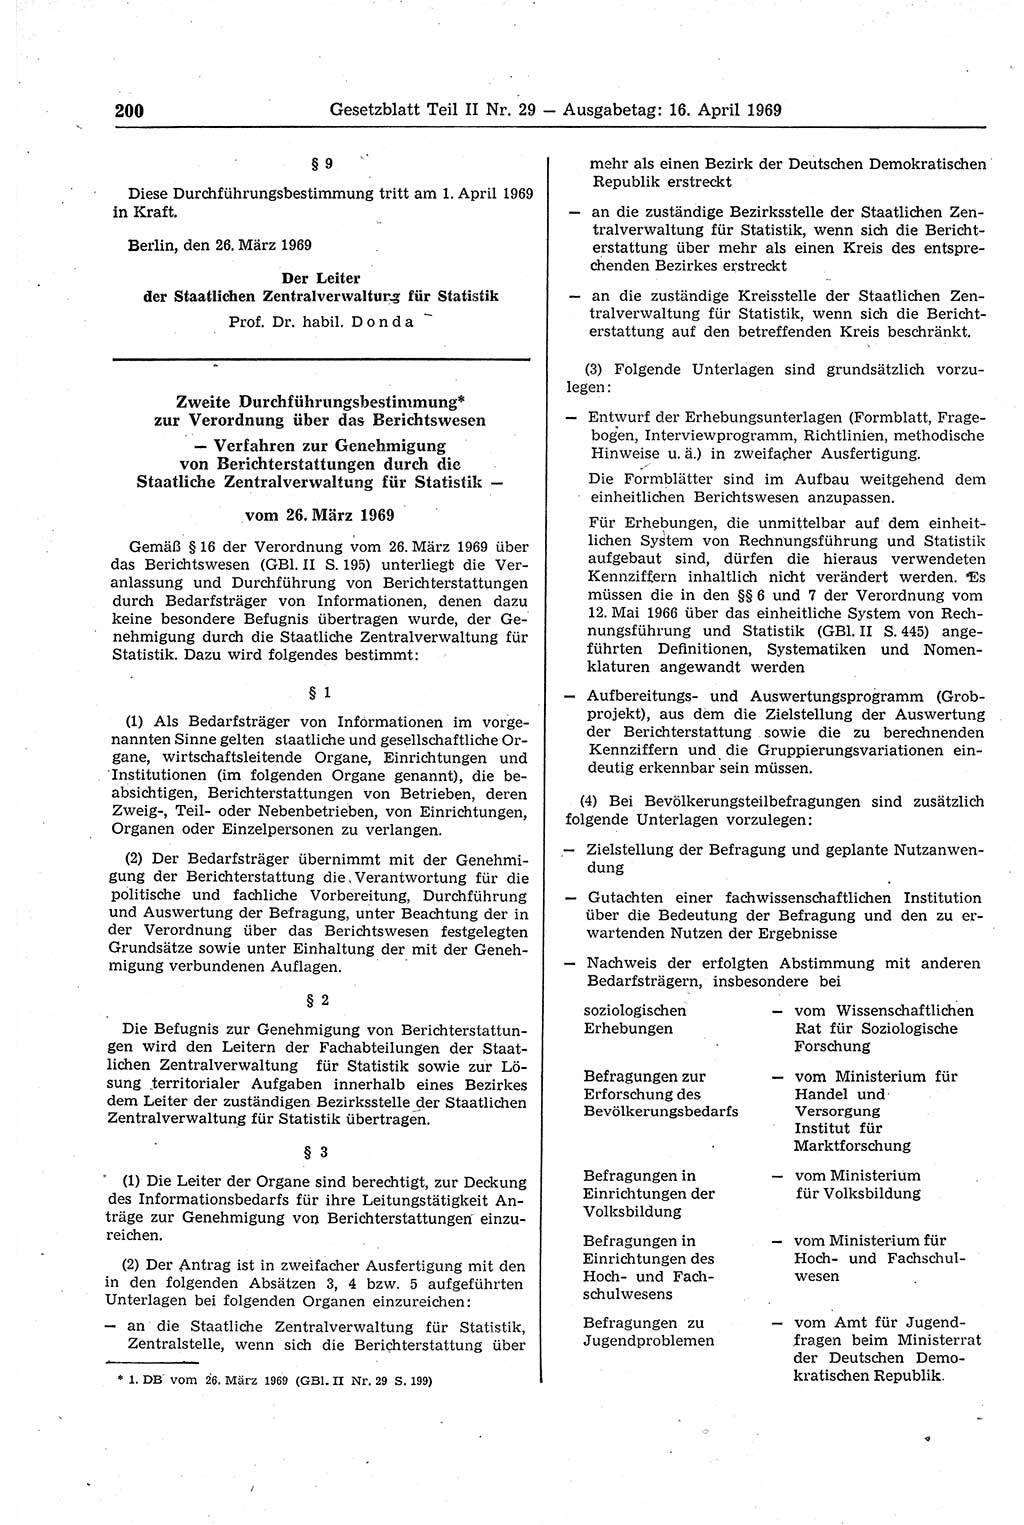 Gesetzblatt (GBl.) der Deutschen Demokratischen Republik (DDR) Teil ⅠⅠ 1969, Seite 200 (GBl. DDR ⅠⅠ 1969, S. 200)